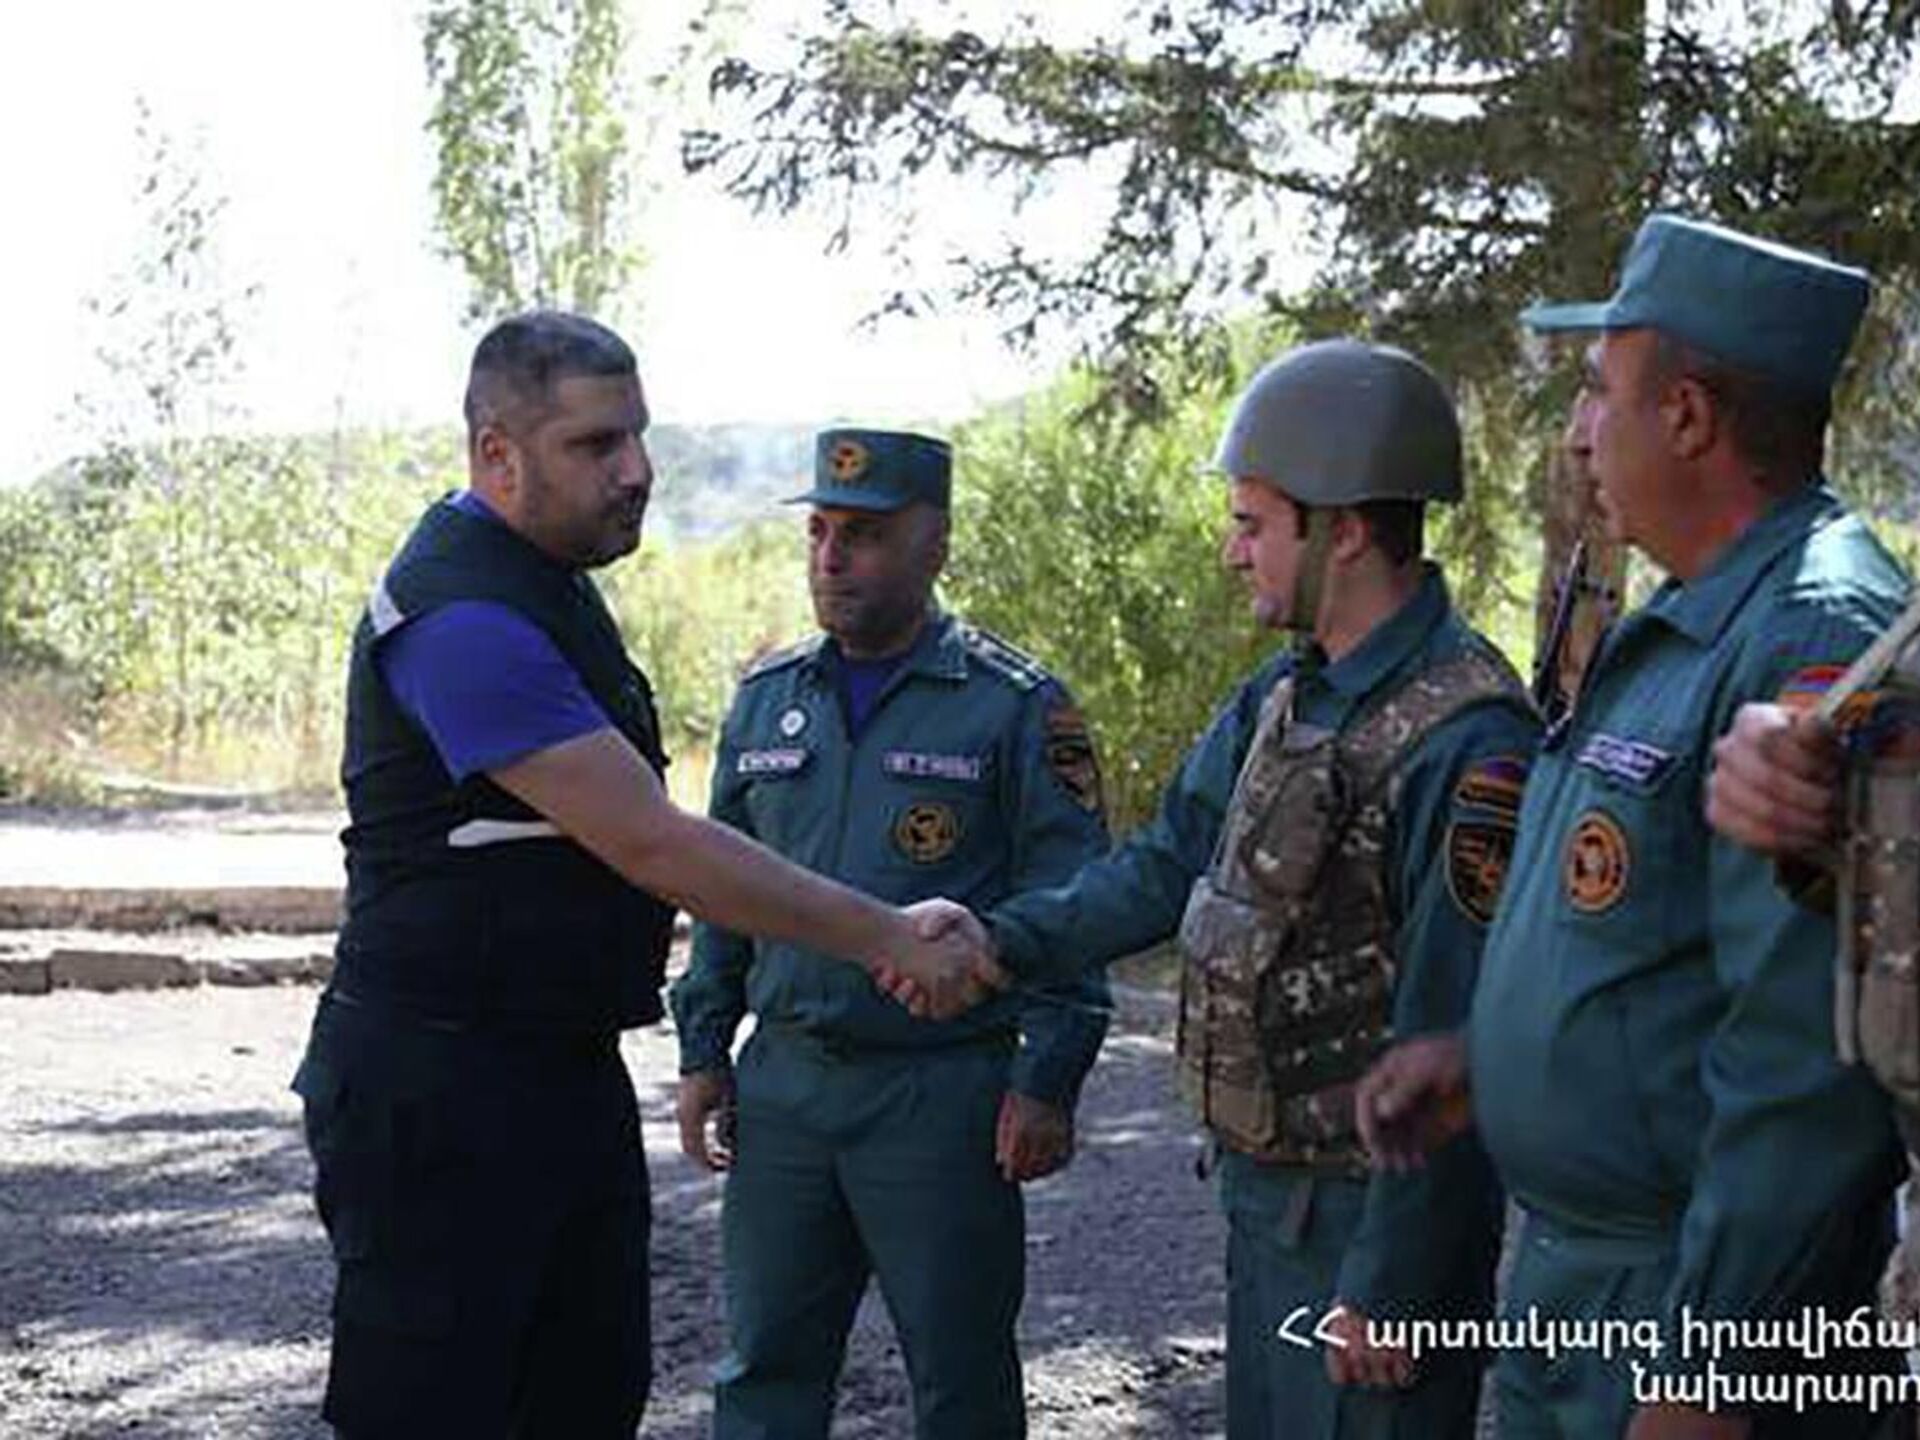 Последние новости в армении на сегодняшний день. Армянские спасатели. Форма армянских спасателей.